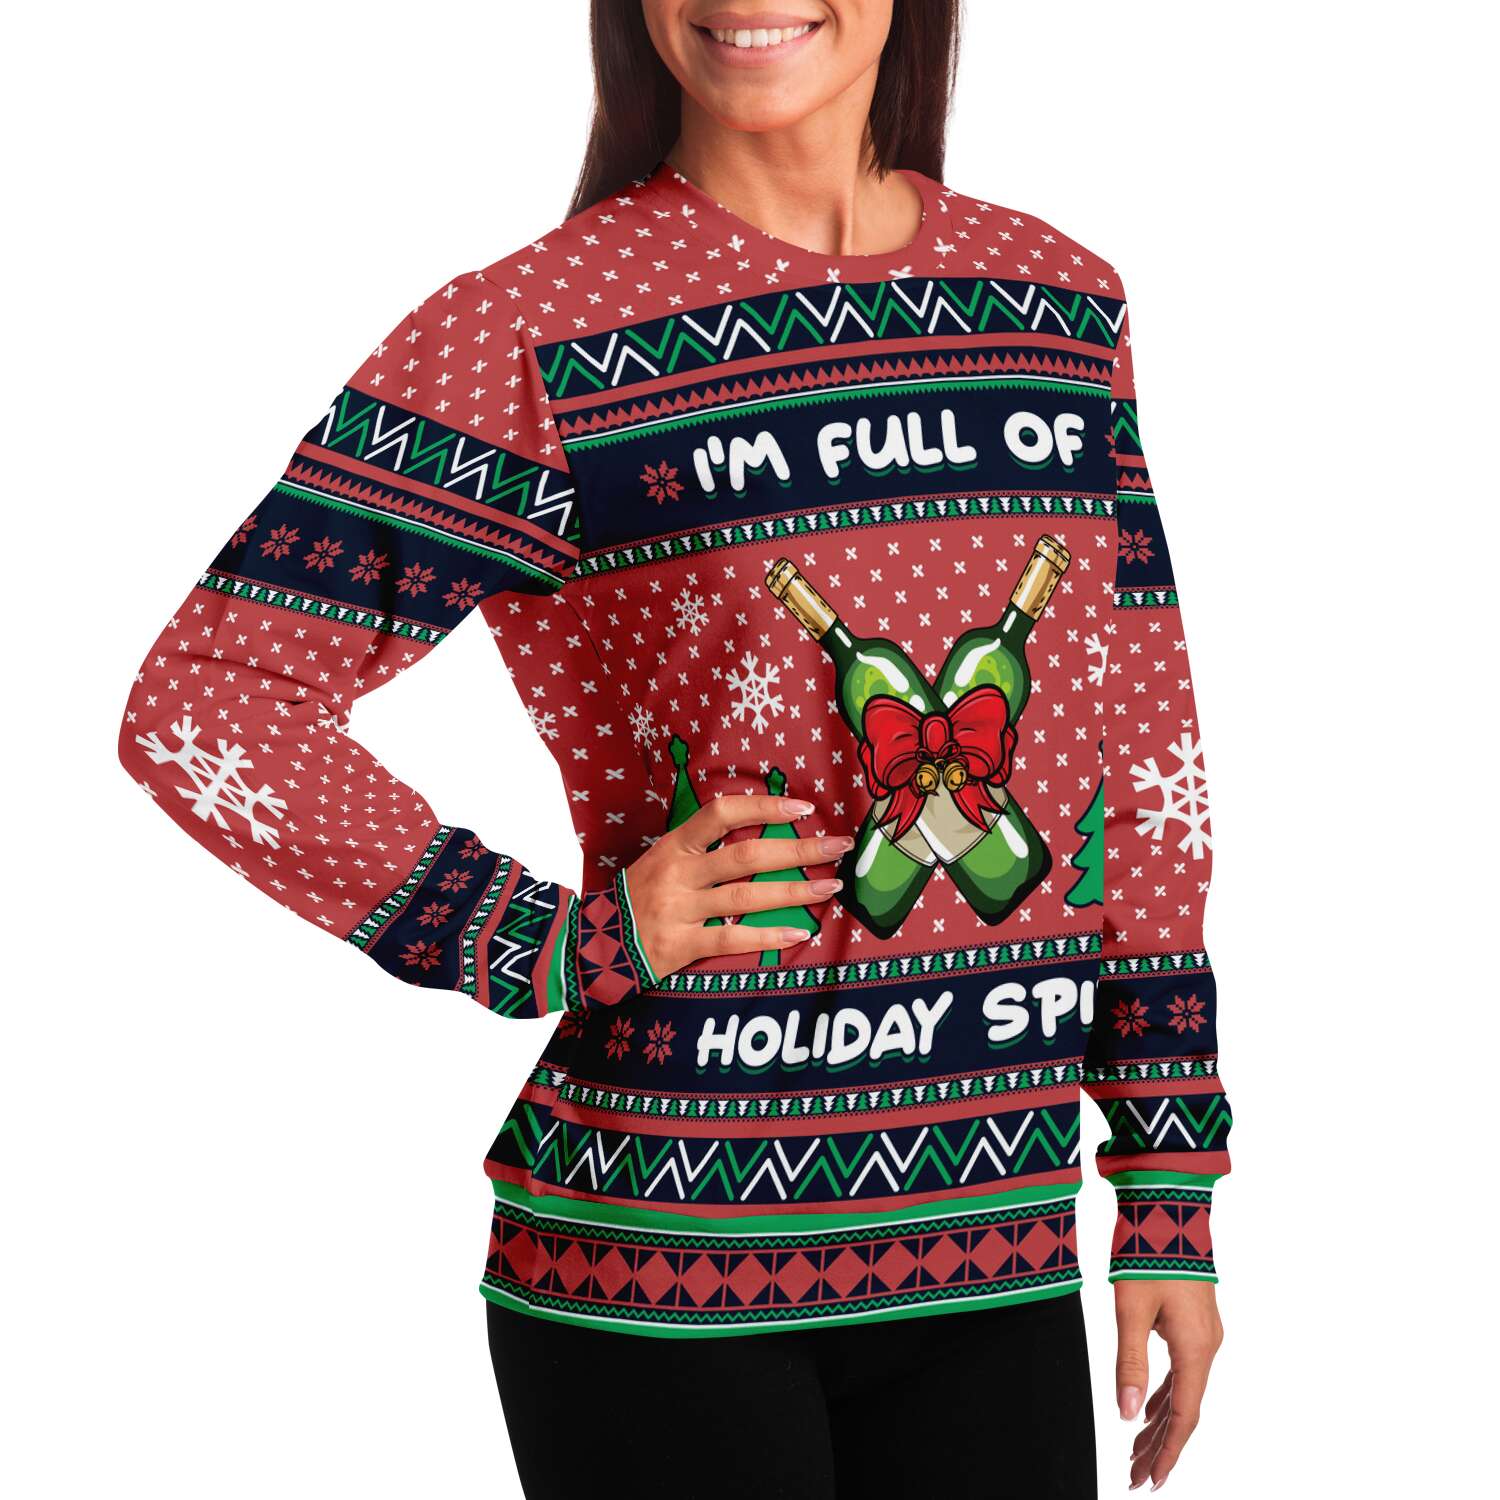 I'm Full Of Holiday Spirit Sweatshirt | Unisex Ugly Christmas Sweater, Xmas Sweater, Holiday Sweater, Festive Sweater, Funny Sweater, Funny Party Shirt